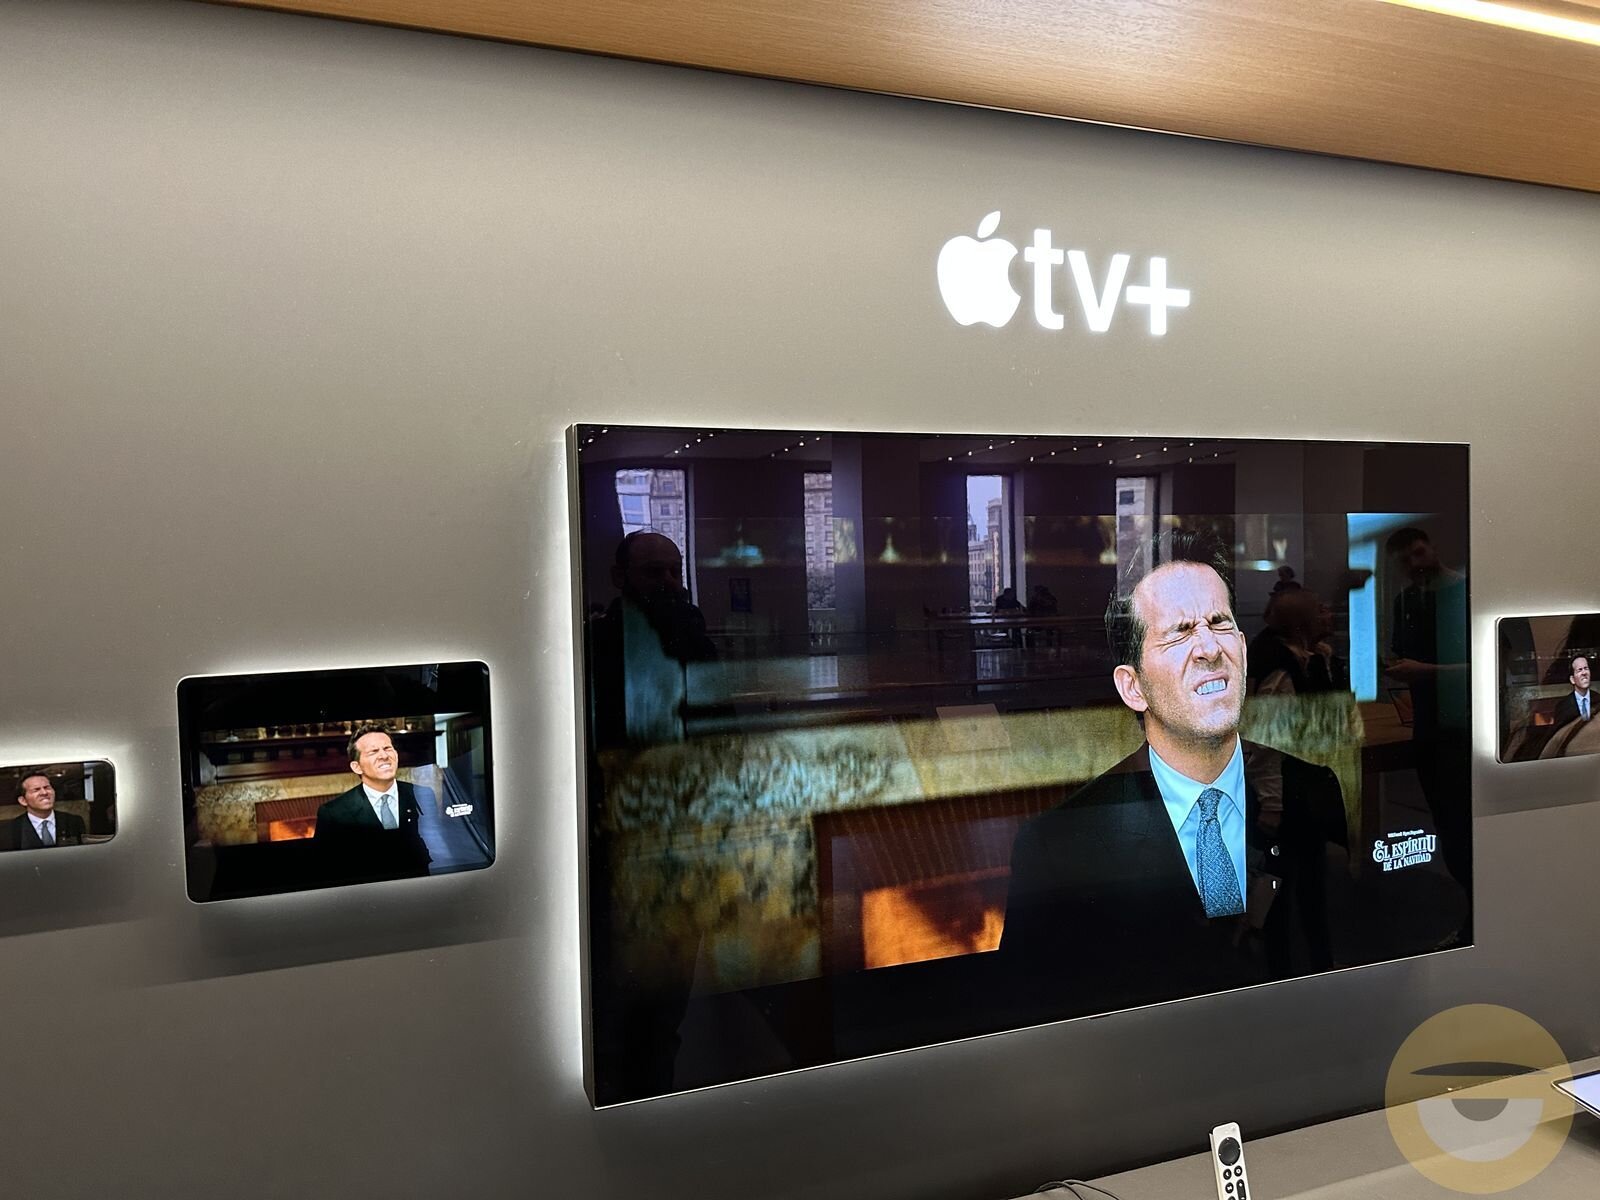 Σε μεγάλες αυξήσεις στο Apple TV+ και σε άλλες υπηρεσίες της προχωρά η Apple